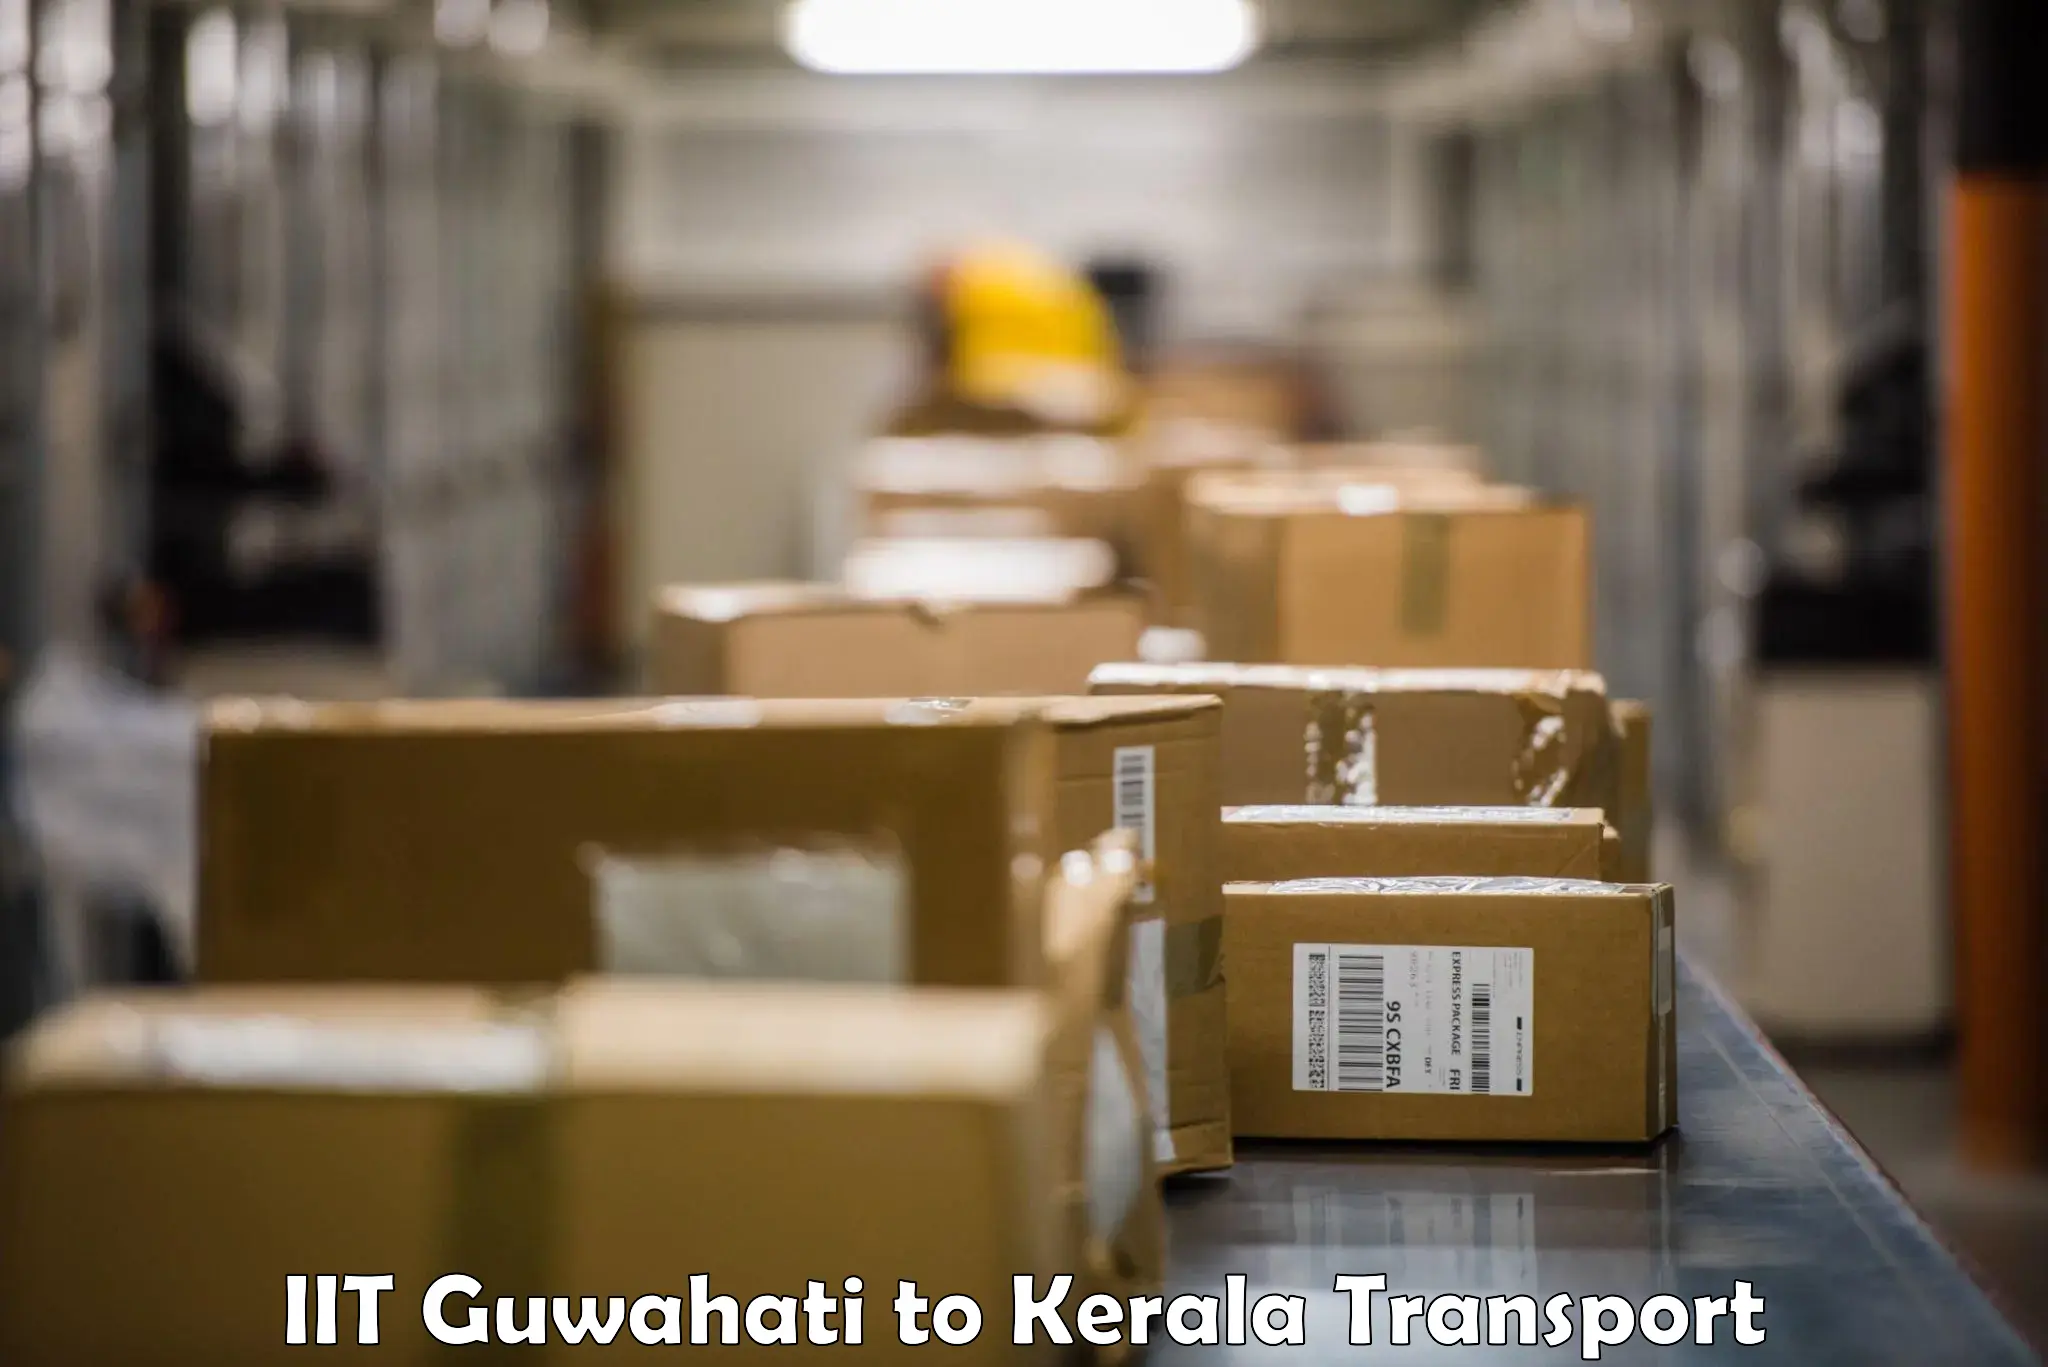 Nearest transport service IIT Guwahati to Kuttikol